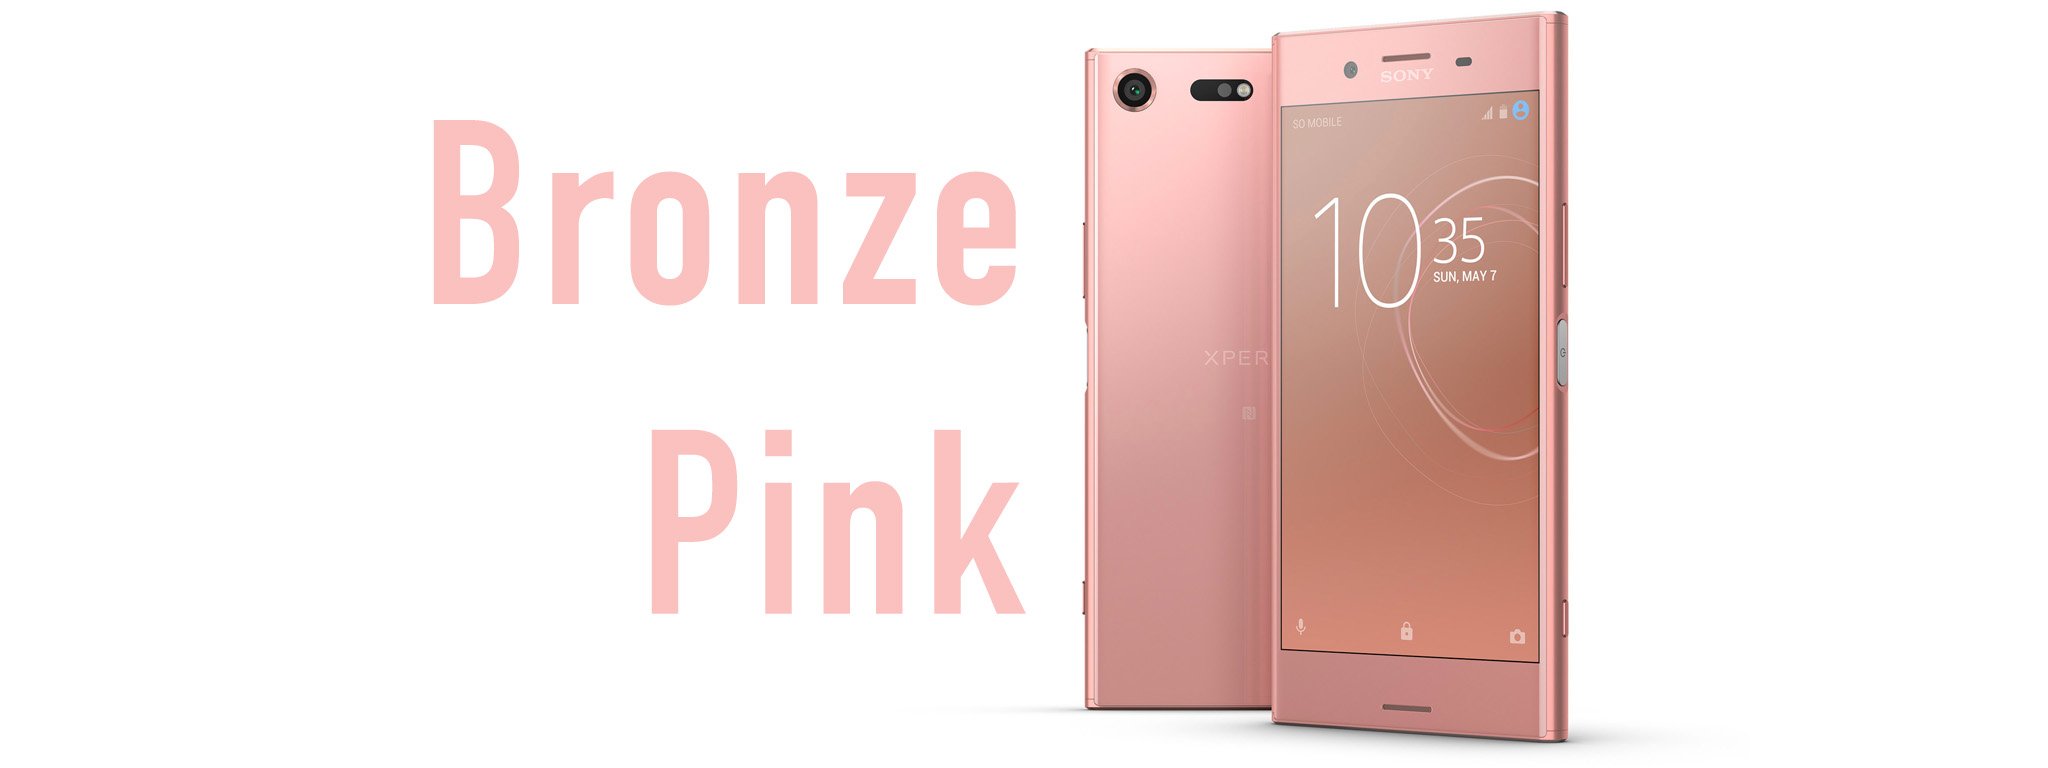 Xperia XZ Premium có màu mới: Bronze Pink, tháng 6 bán